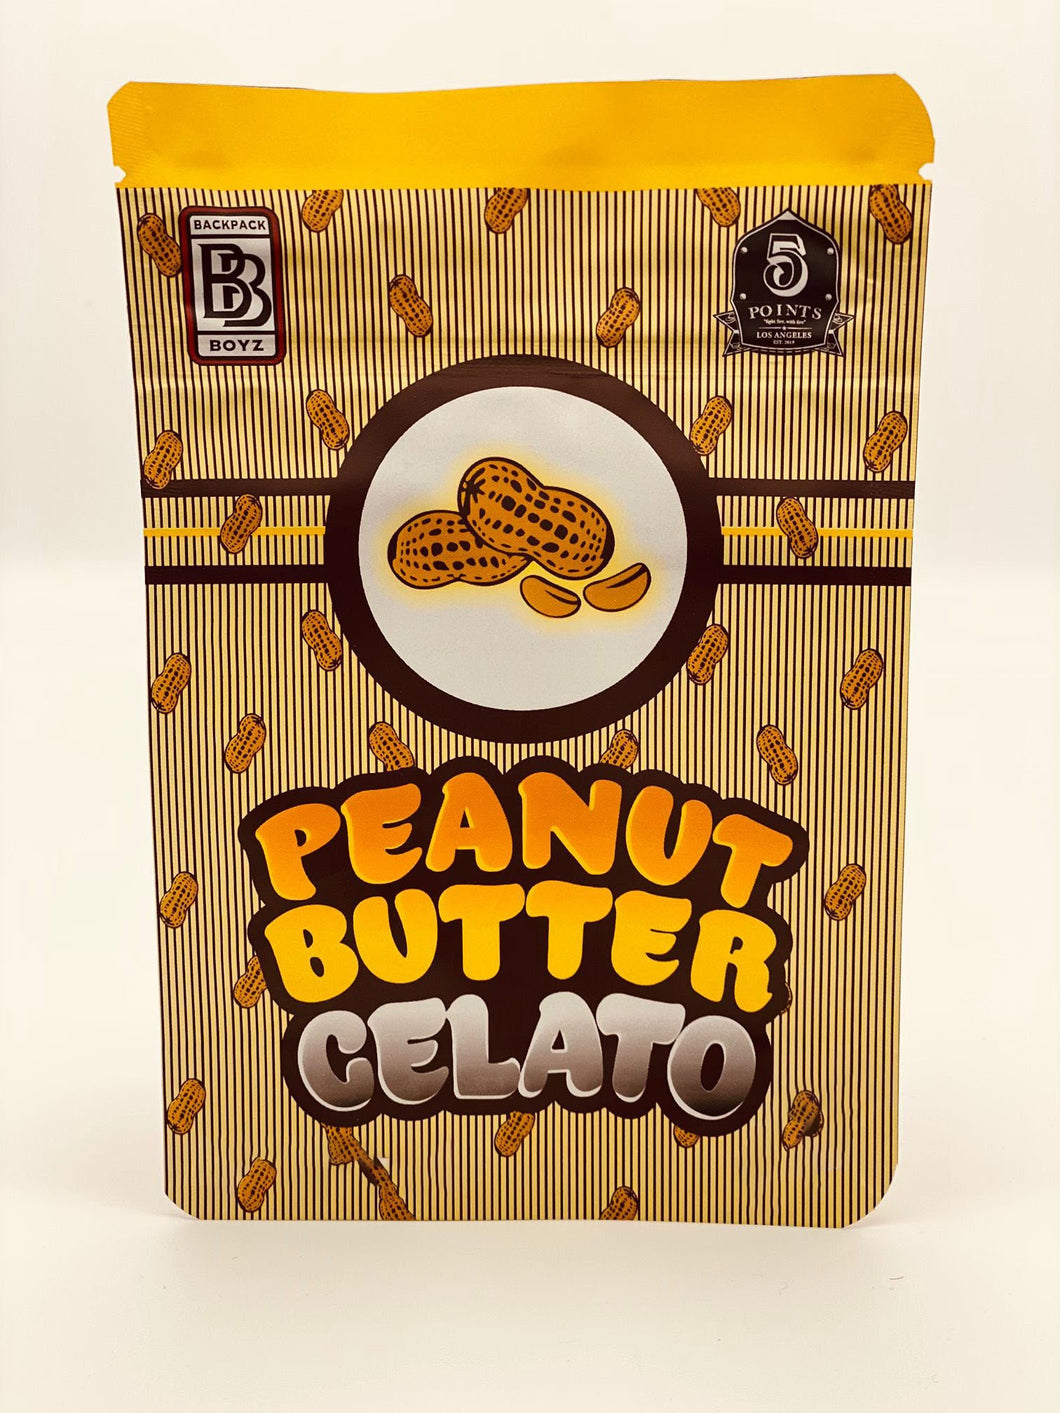 50 Backpack Boyz Peanut Butter Gelato 3.5-gram empty Mylar bags.